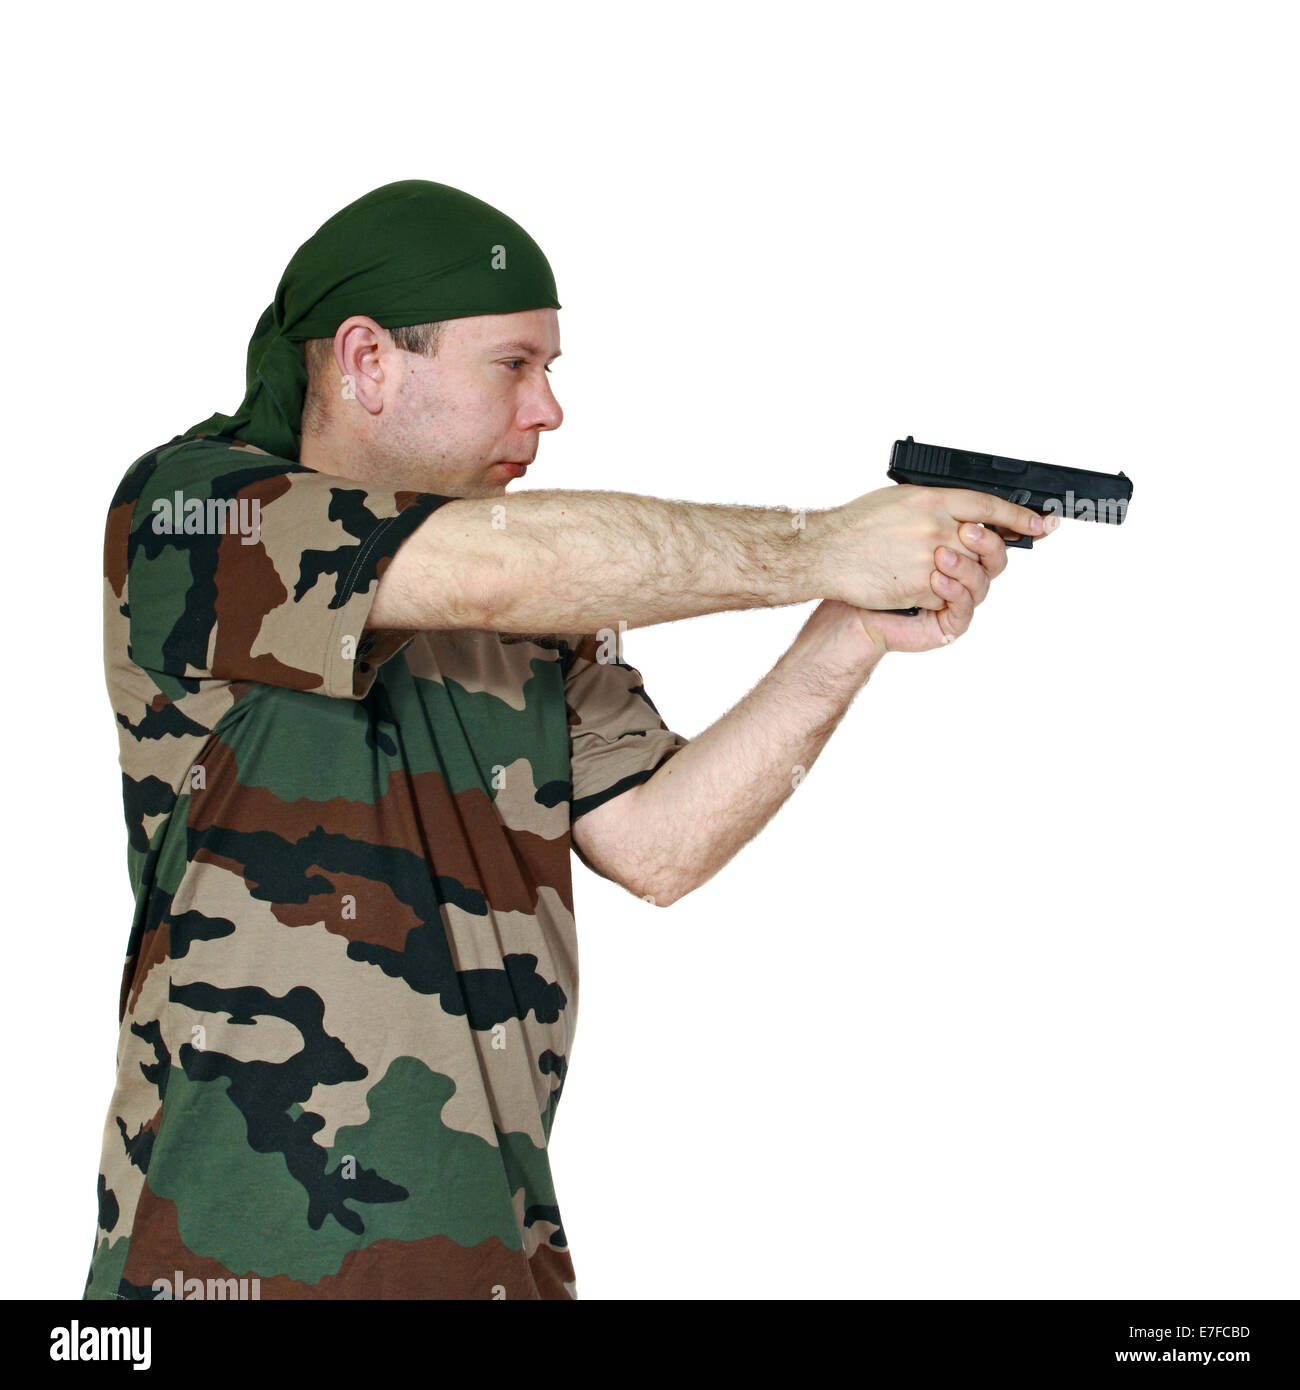 Uomo in camuffamento puntando una pistola. Isolato su sfondo bianco Foto Stock